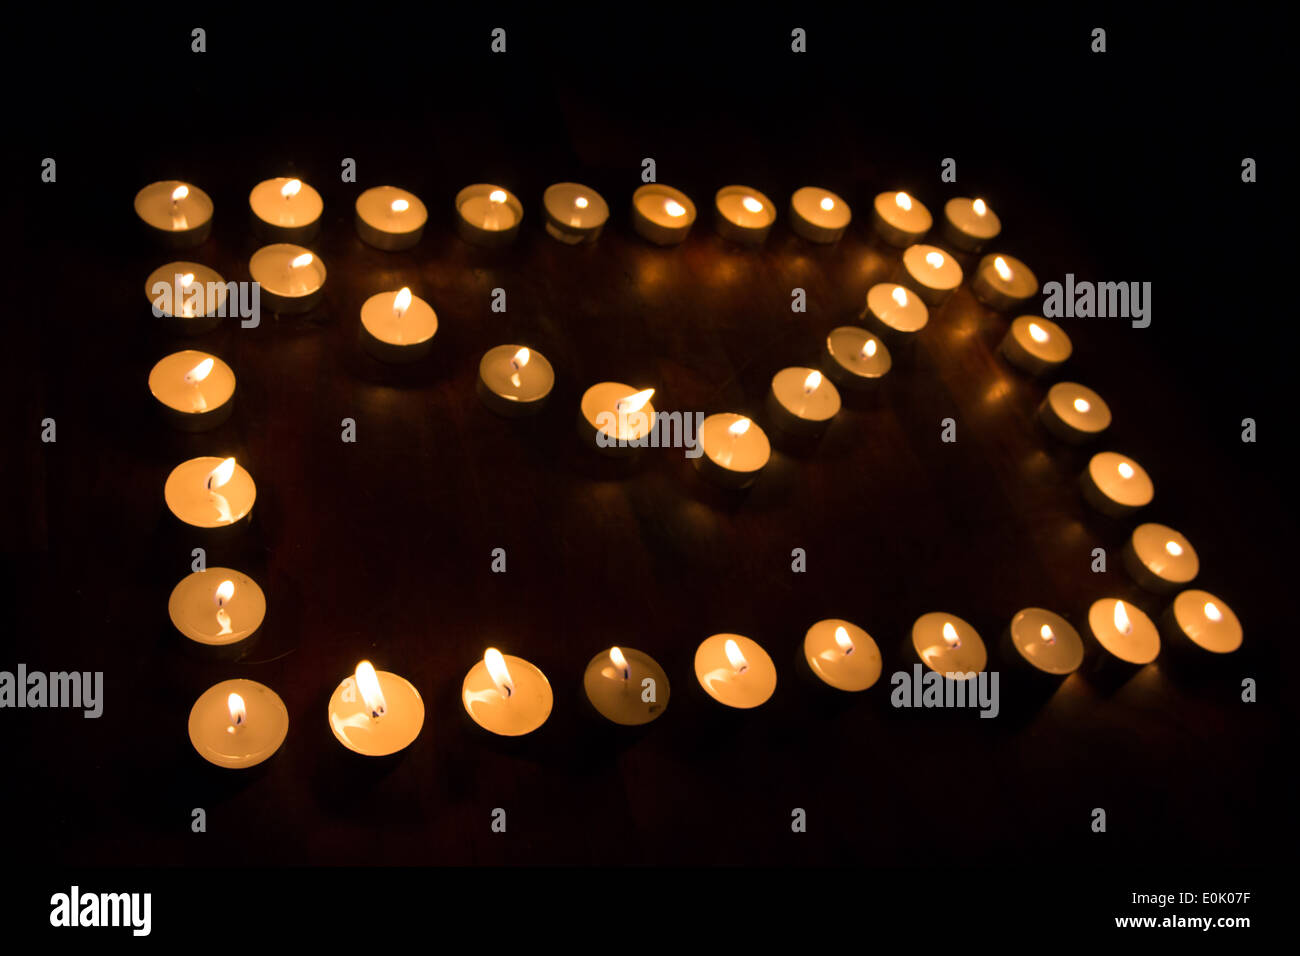 E-Mail Internet Symbole de connexion à la lumière des bougies Banque D'Images